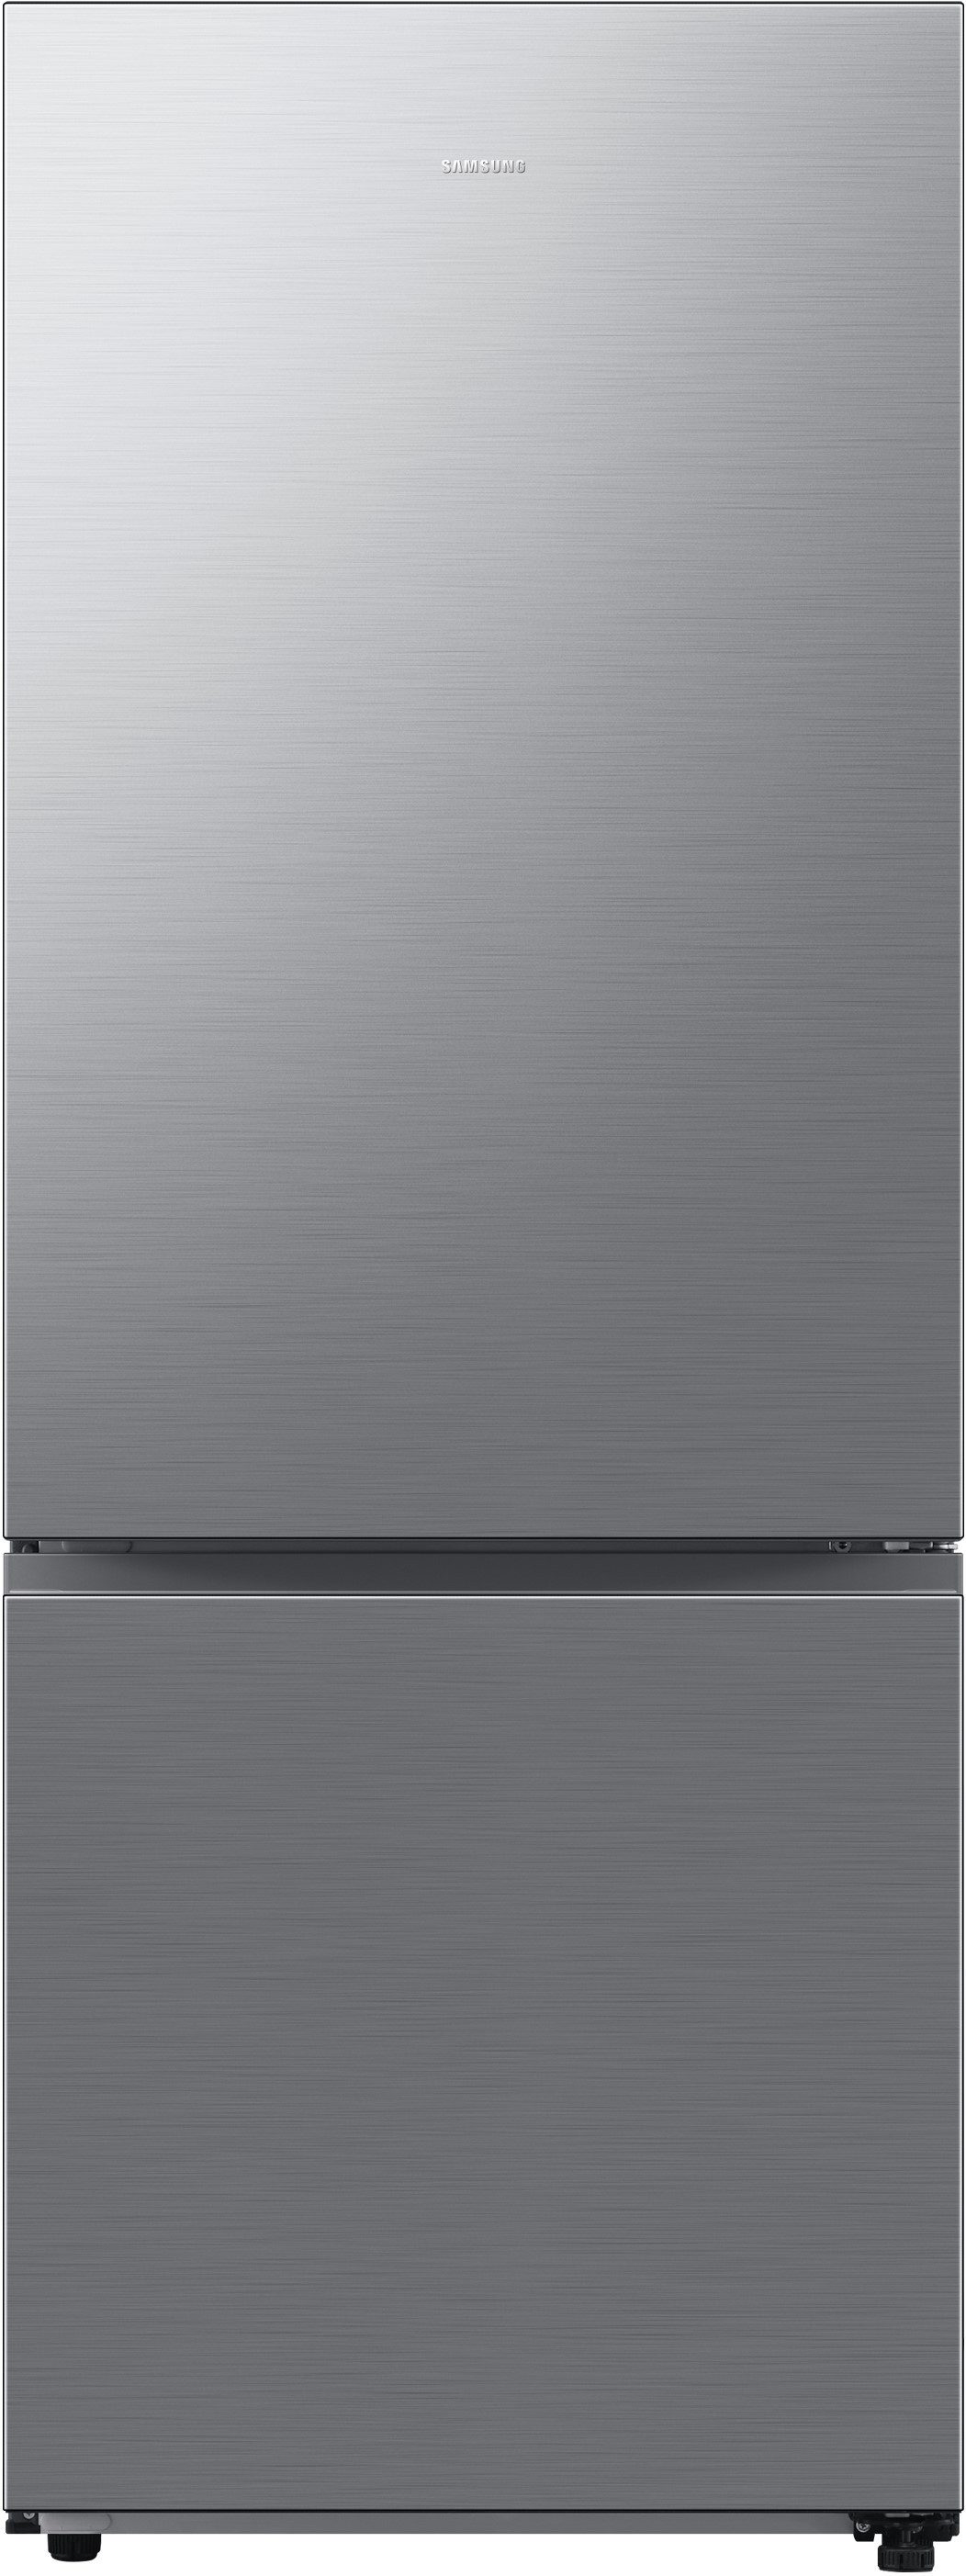 Samsung Kühl-/Gefrierkombination RB6000 RB53DG706AS9, 203 cm hoch, 75,9 cm breit